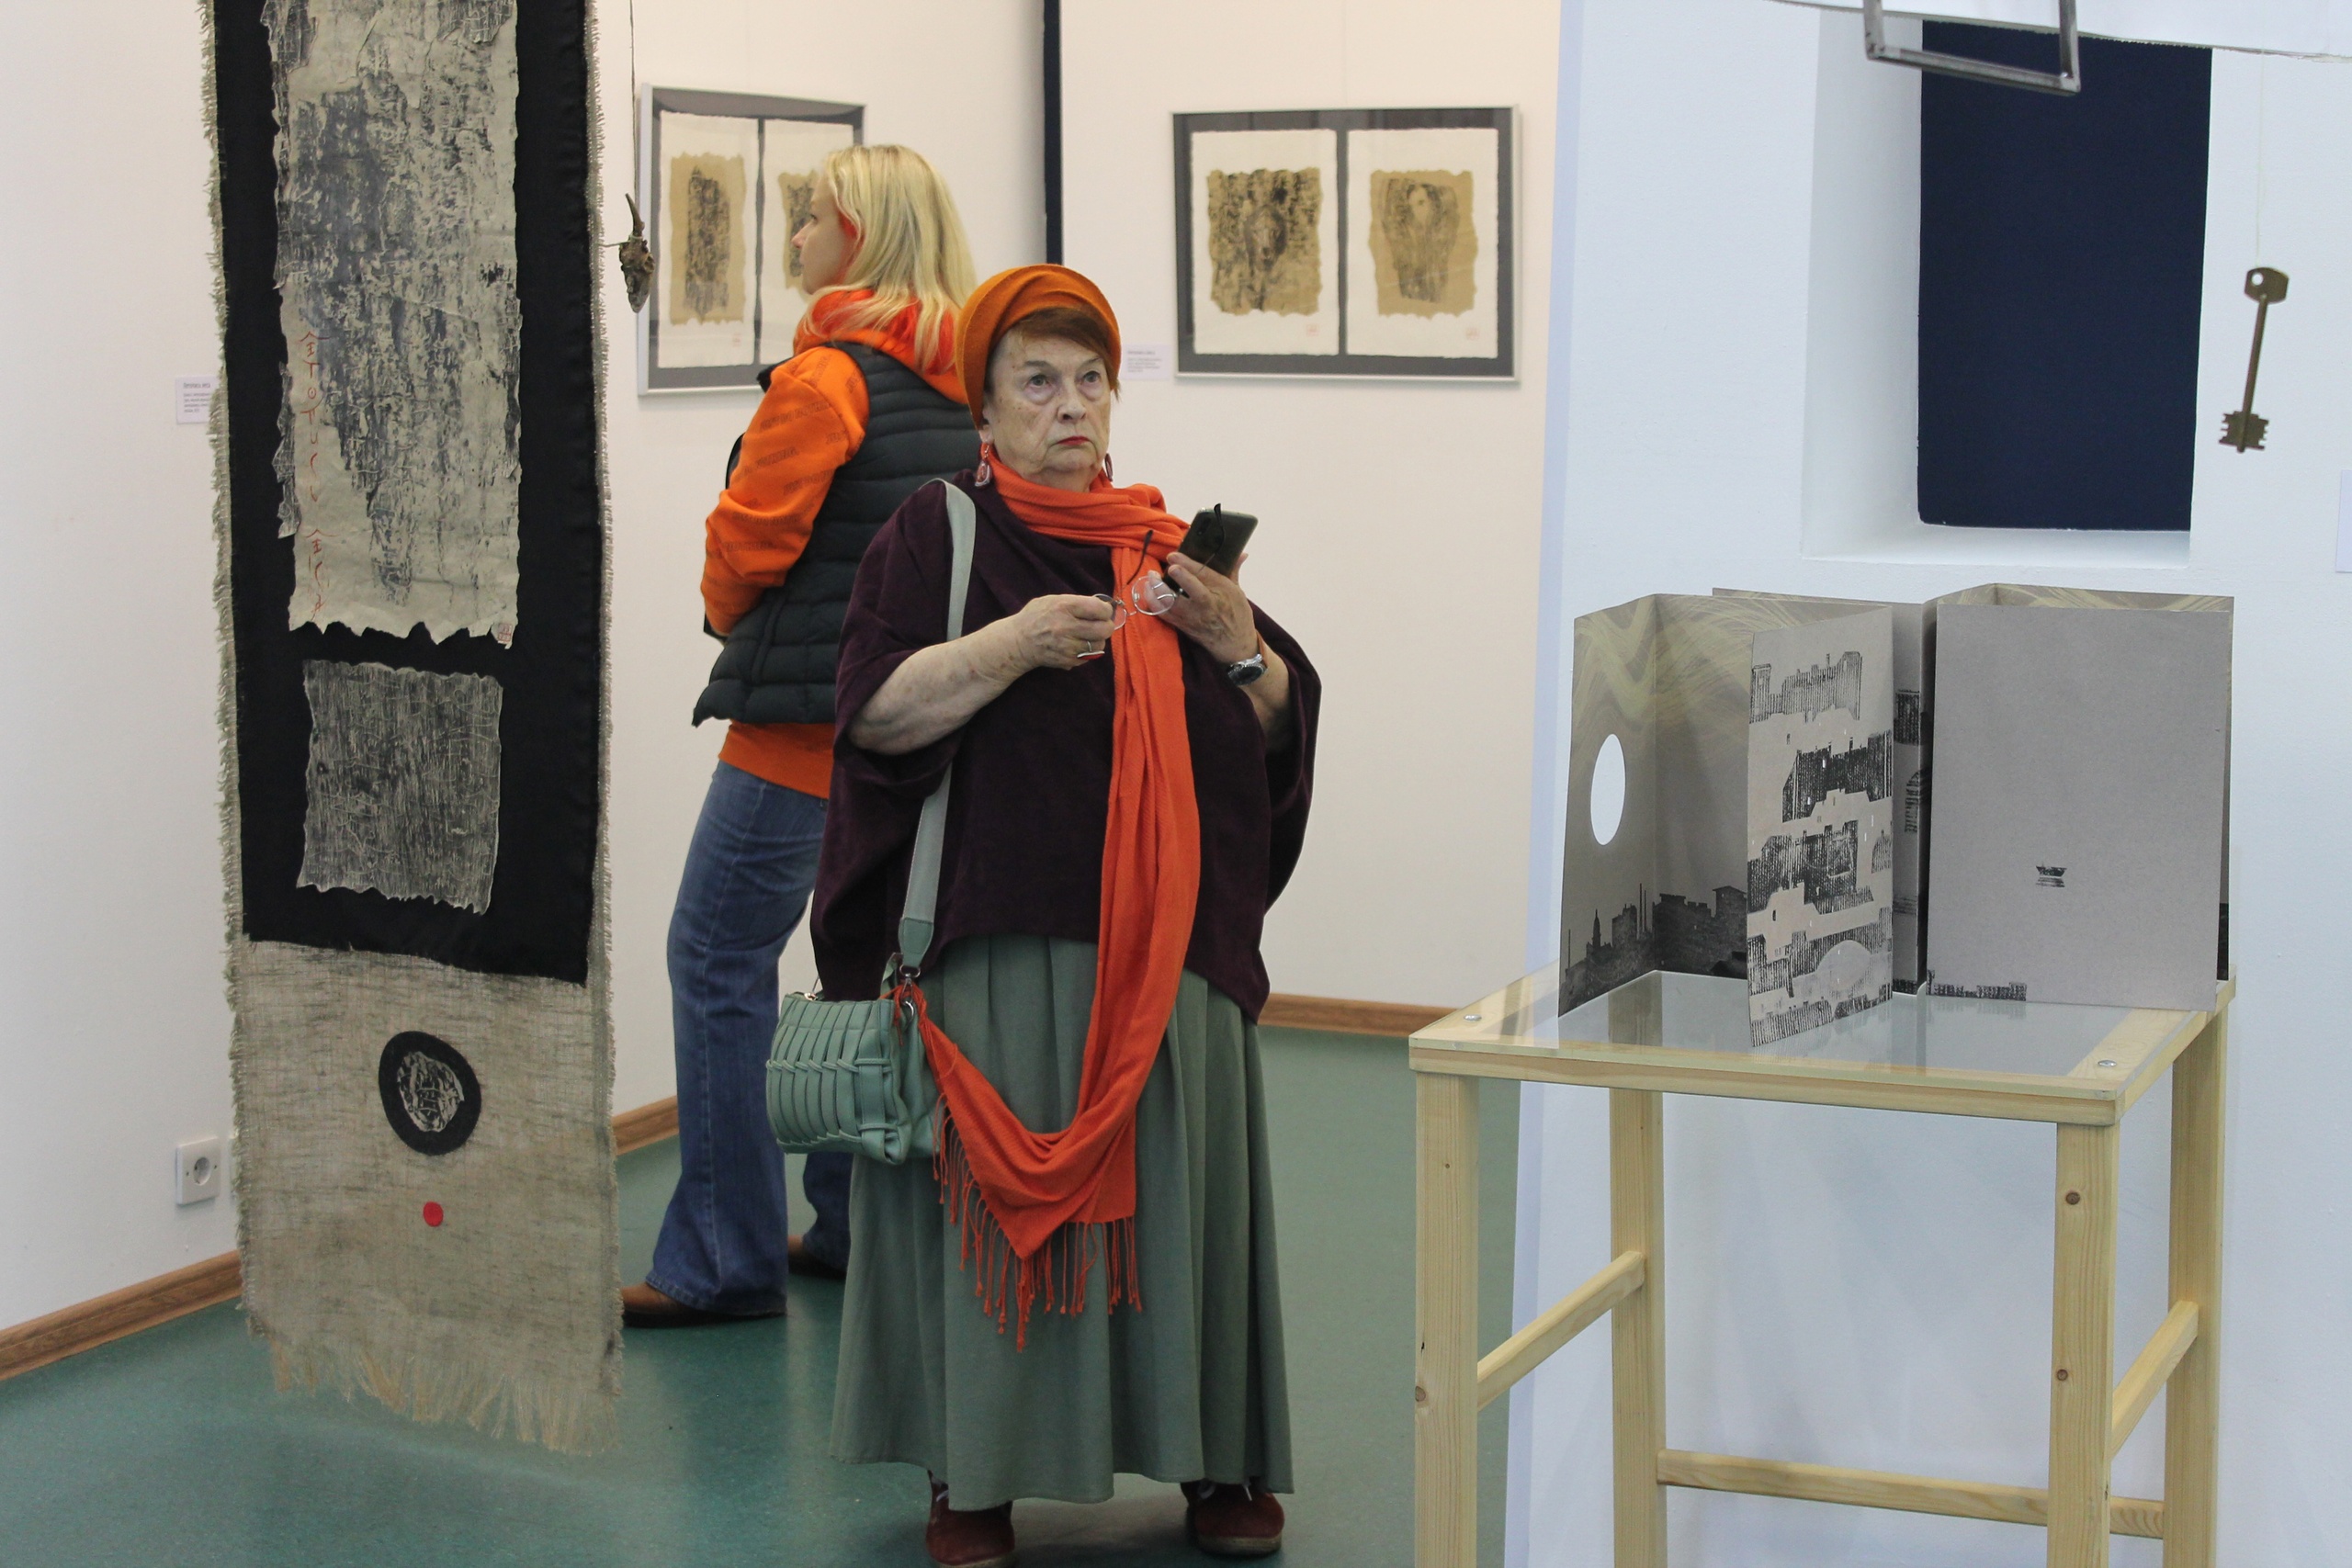 Petroskoin Vyhod-mediakeskuksessa avattu näyttely esittelee Aleksandra Anjuhinan 35 työtä, jotka on tehty taiteilijakirjan muotoon. 0+. Kuva: Petroskoin Vyhod-mediakeskuksen VKontakte-sivu